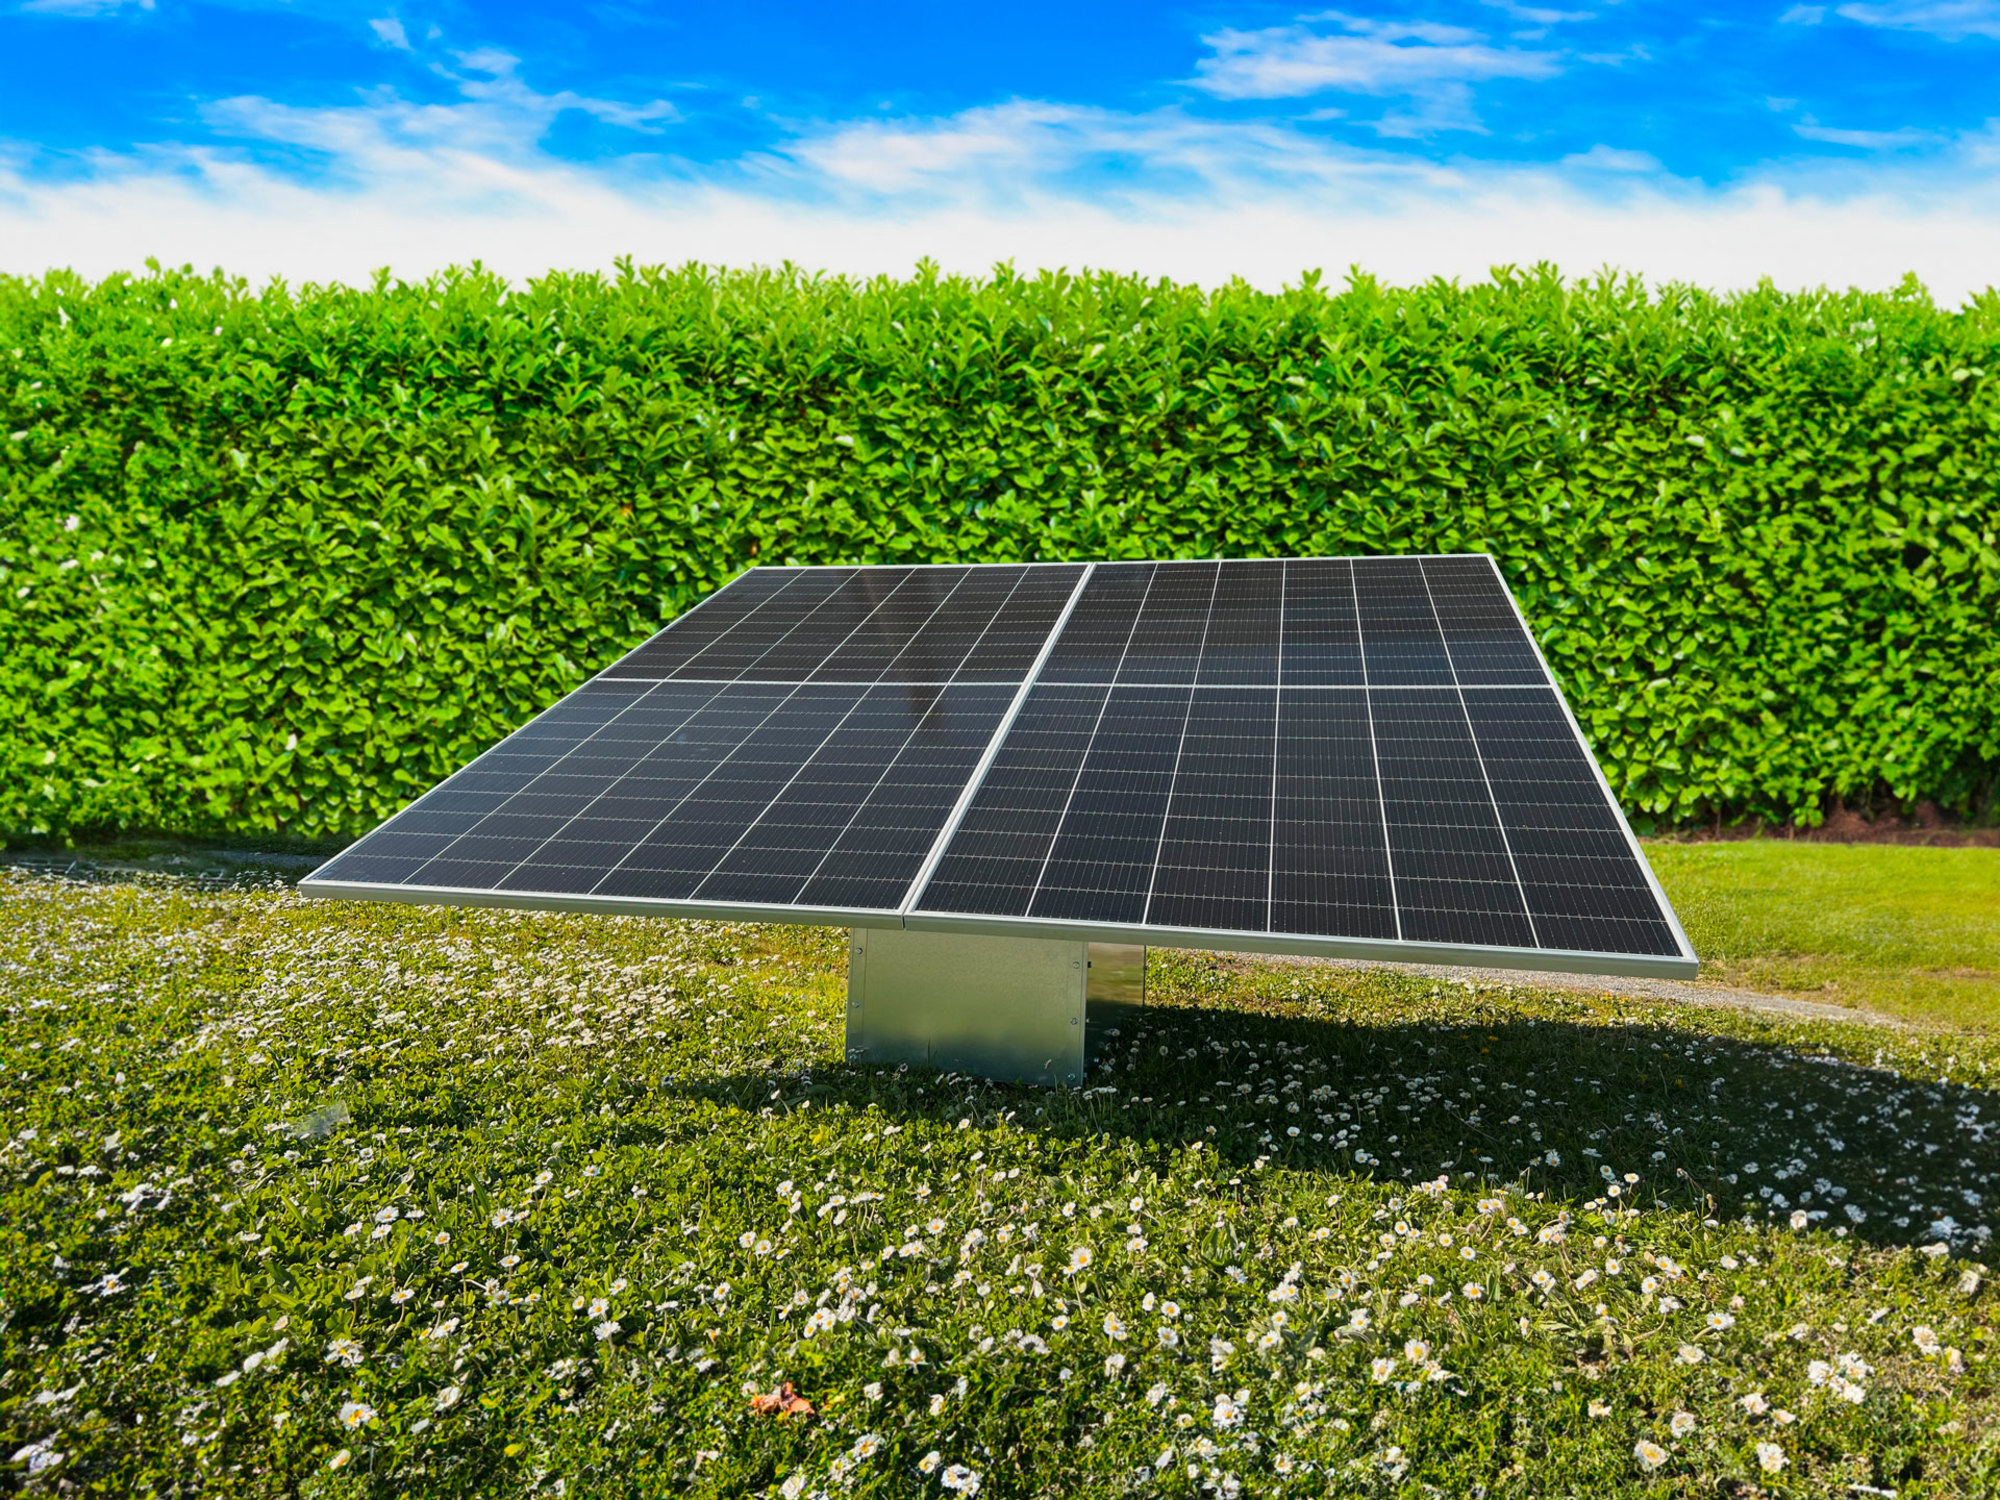 Kit de panneaux solaires Triangle pour autoconsommation, représentant la maîtrise de l'énergie solaire pour les particuliers.